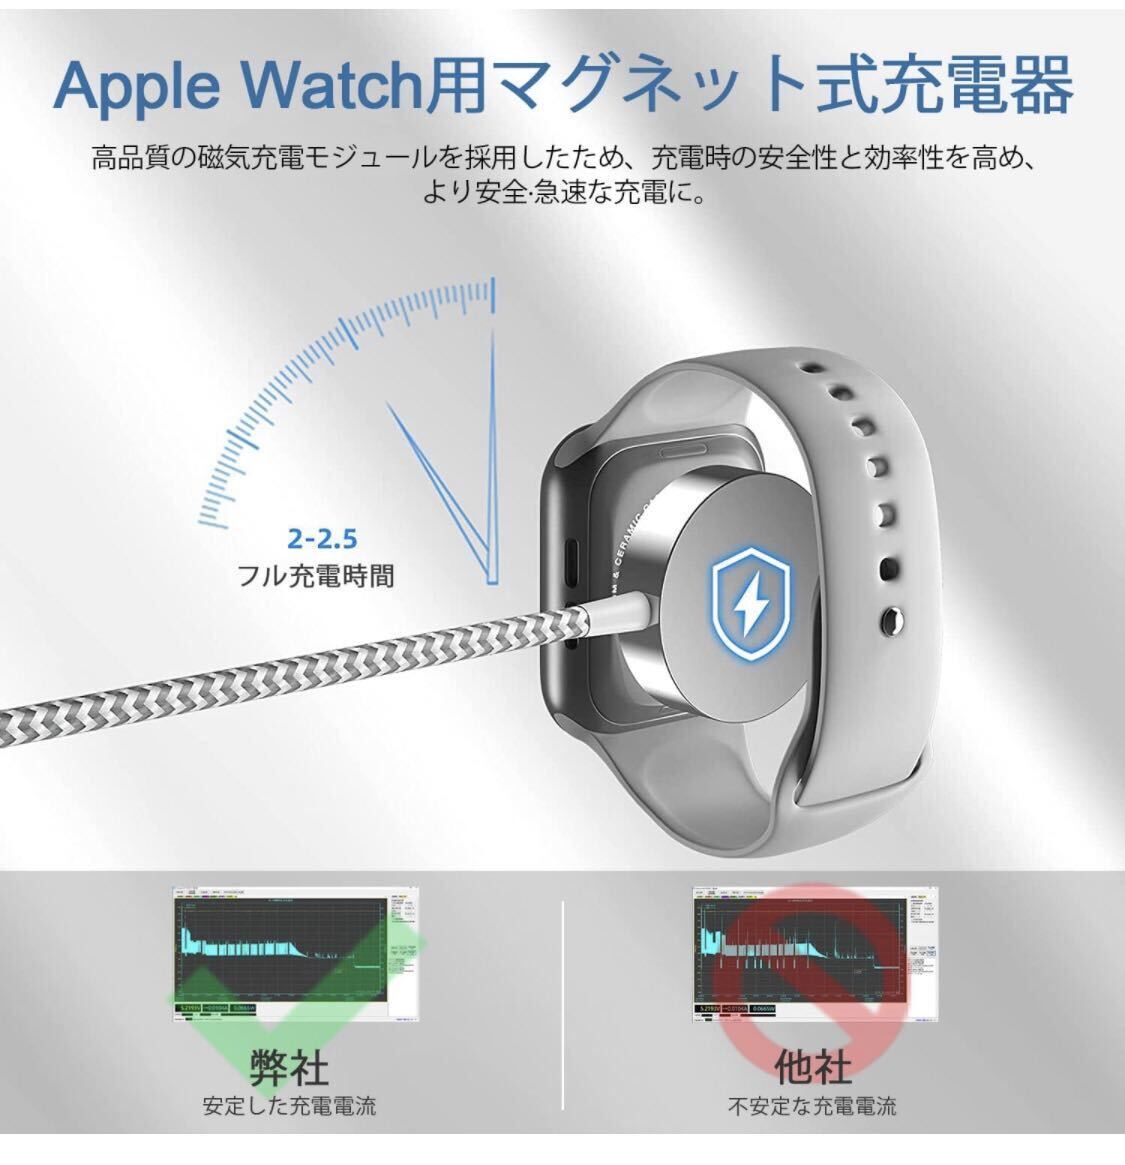 2in1 Apple Watch充電器 アップルウォッチ 充電器 1M マグネット式 ワイヤレス充電 アップルウォッチ充電ケーブル 高耐久ナイロン赤